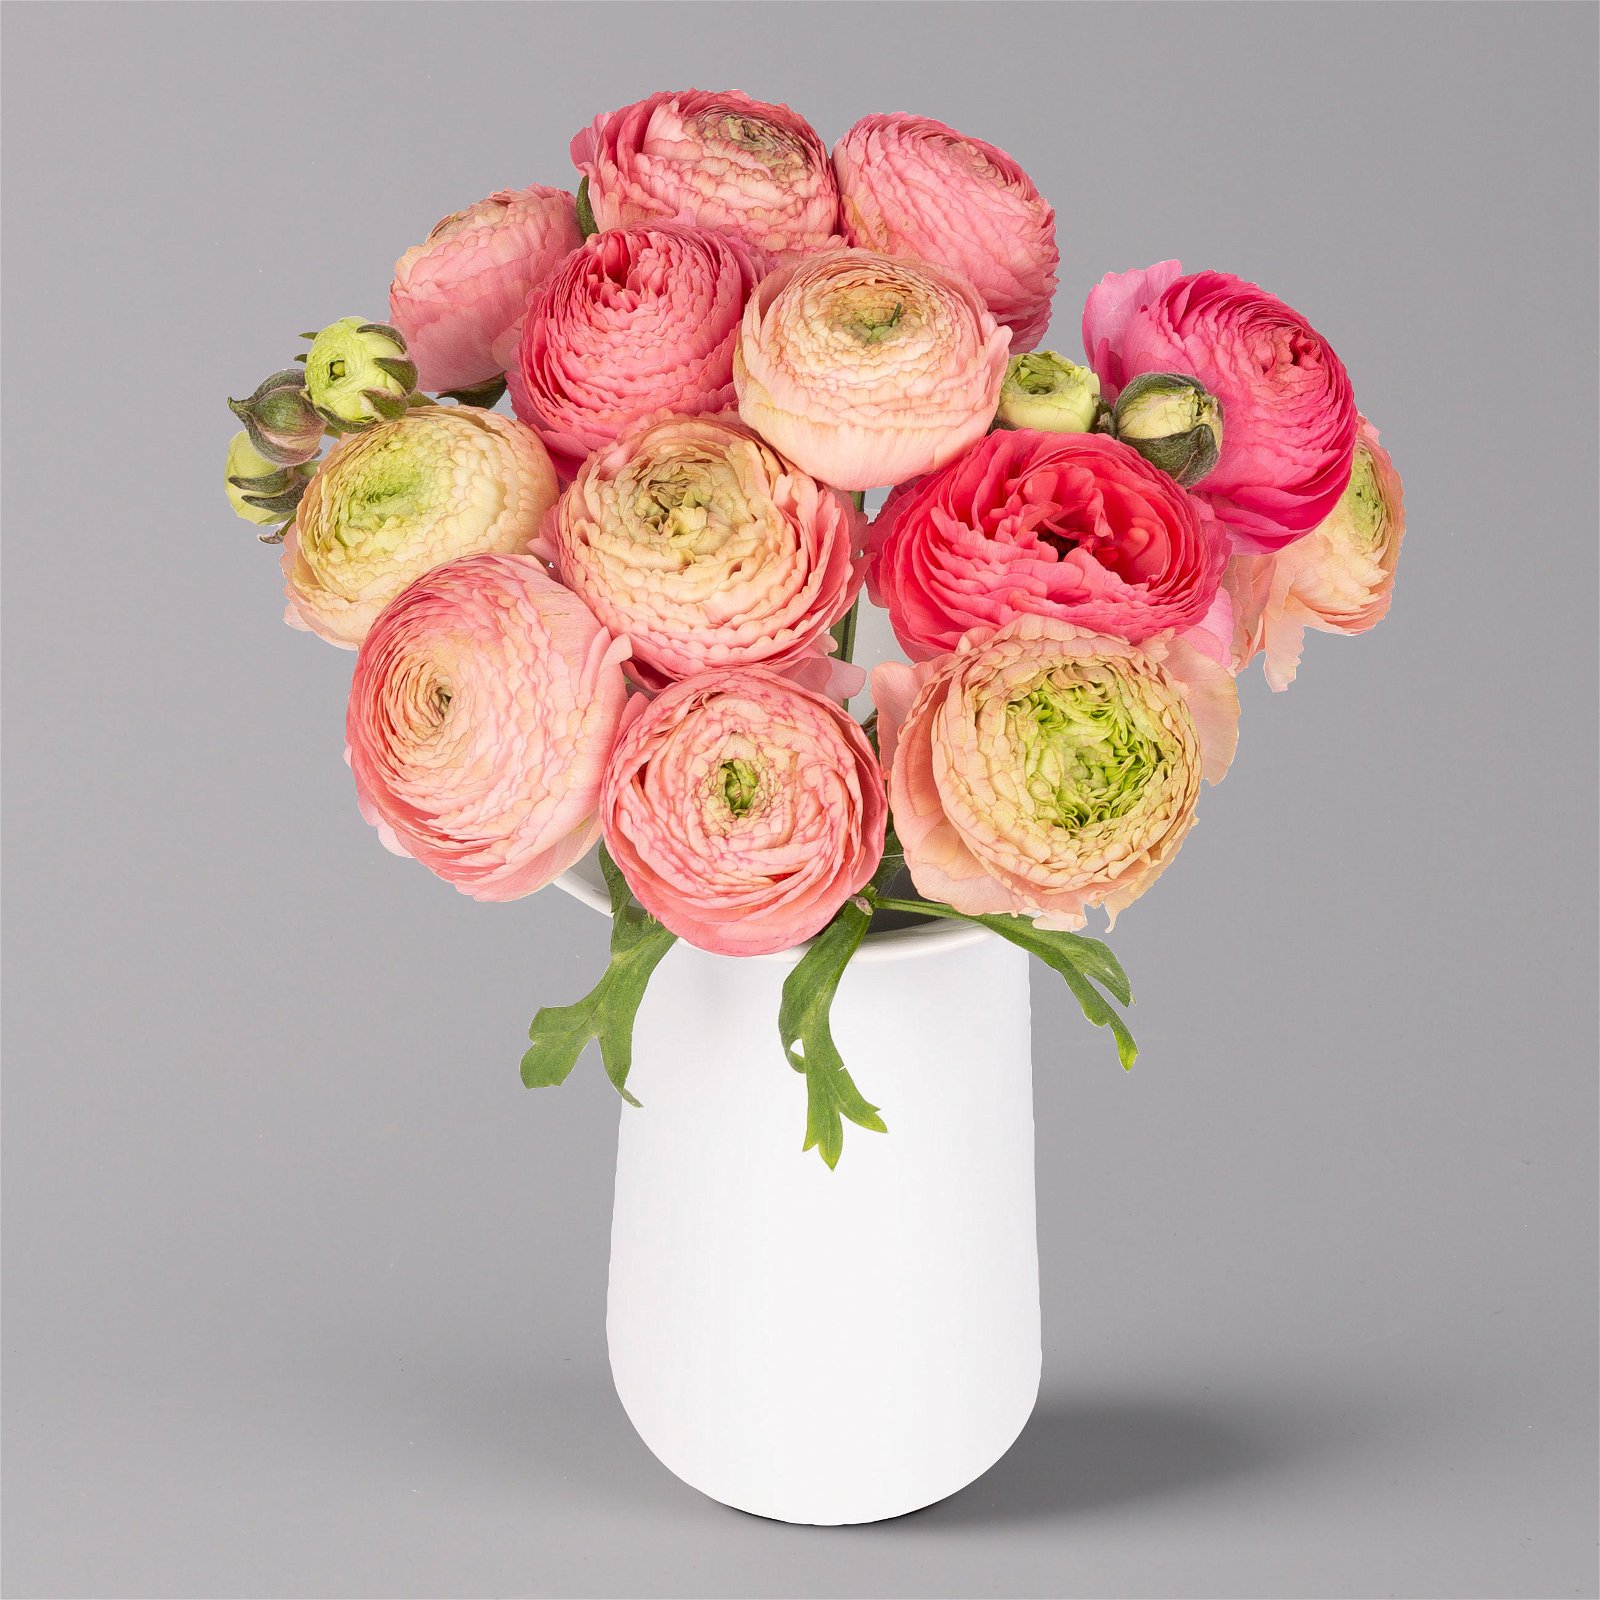 Blumenbund mit Ranunkeln, 15er-Bund, rosa, inkl. gratis Grußkarte